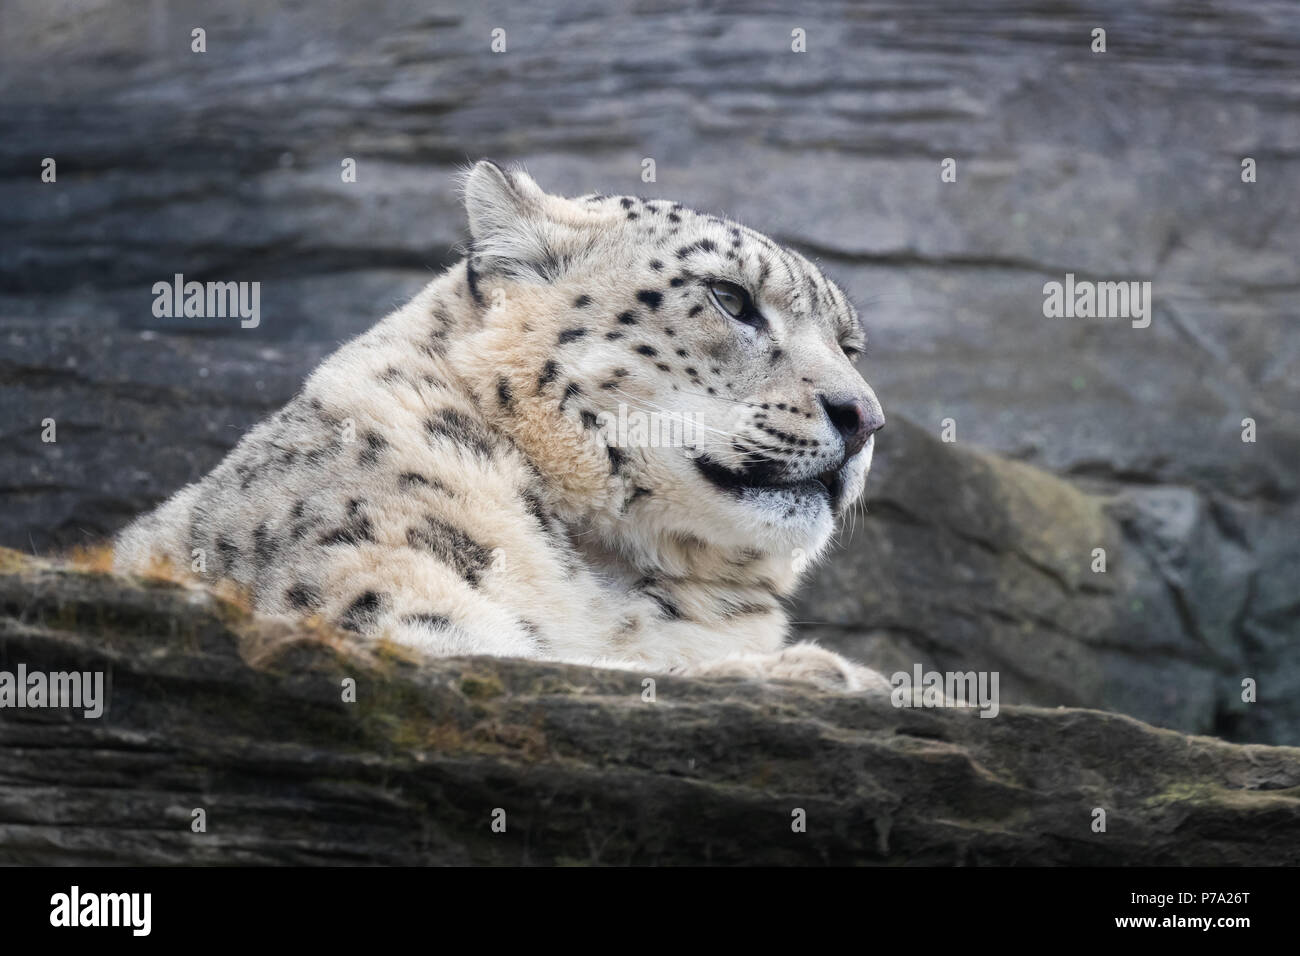 Nach snow leopard ruht auf Felsvorsprung Stockfoto